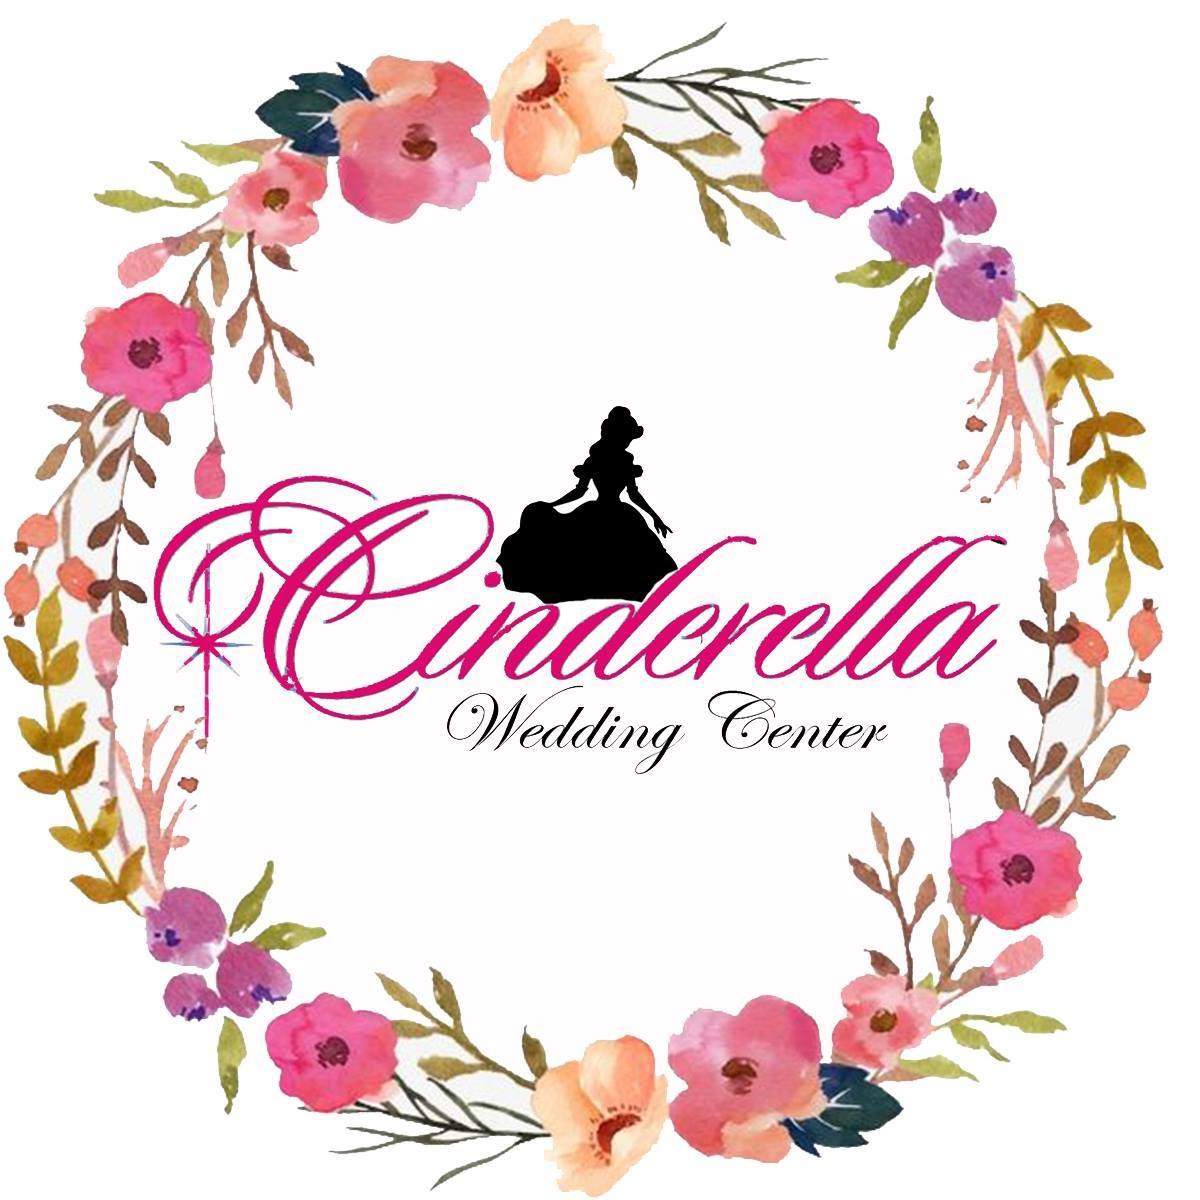 Cindrella Wedding Center